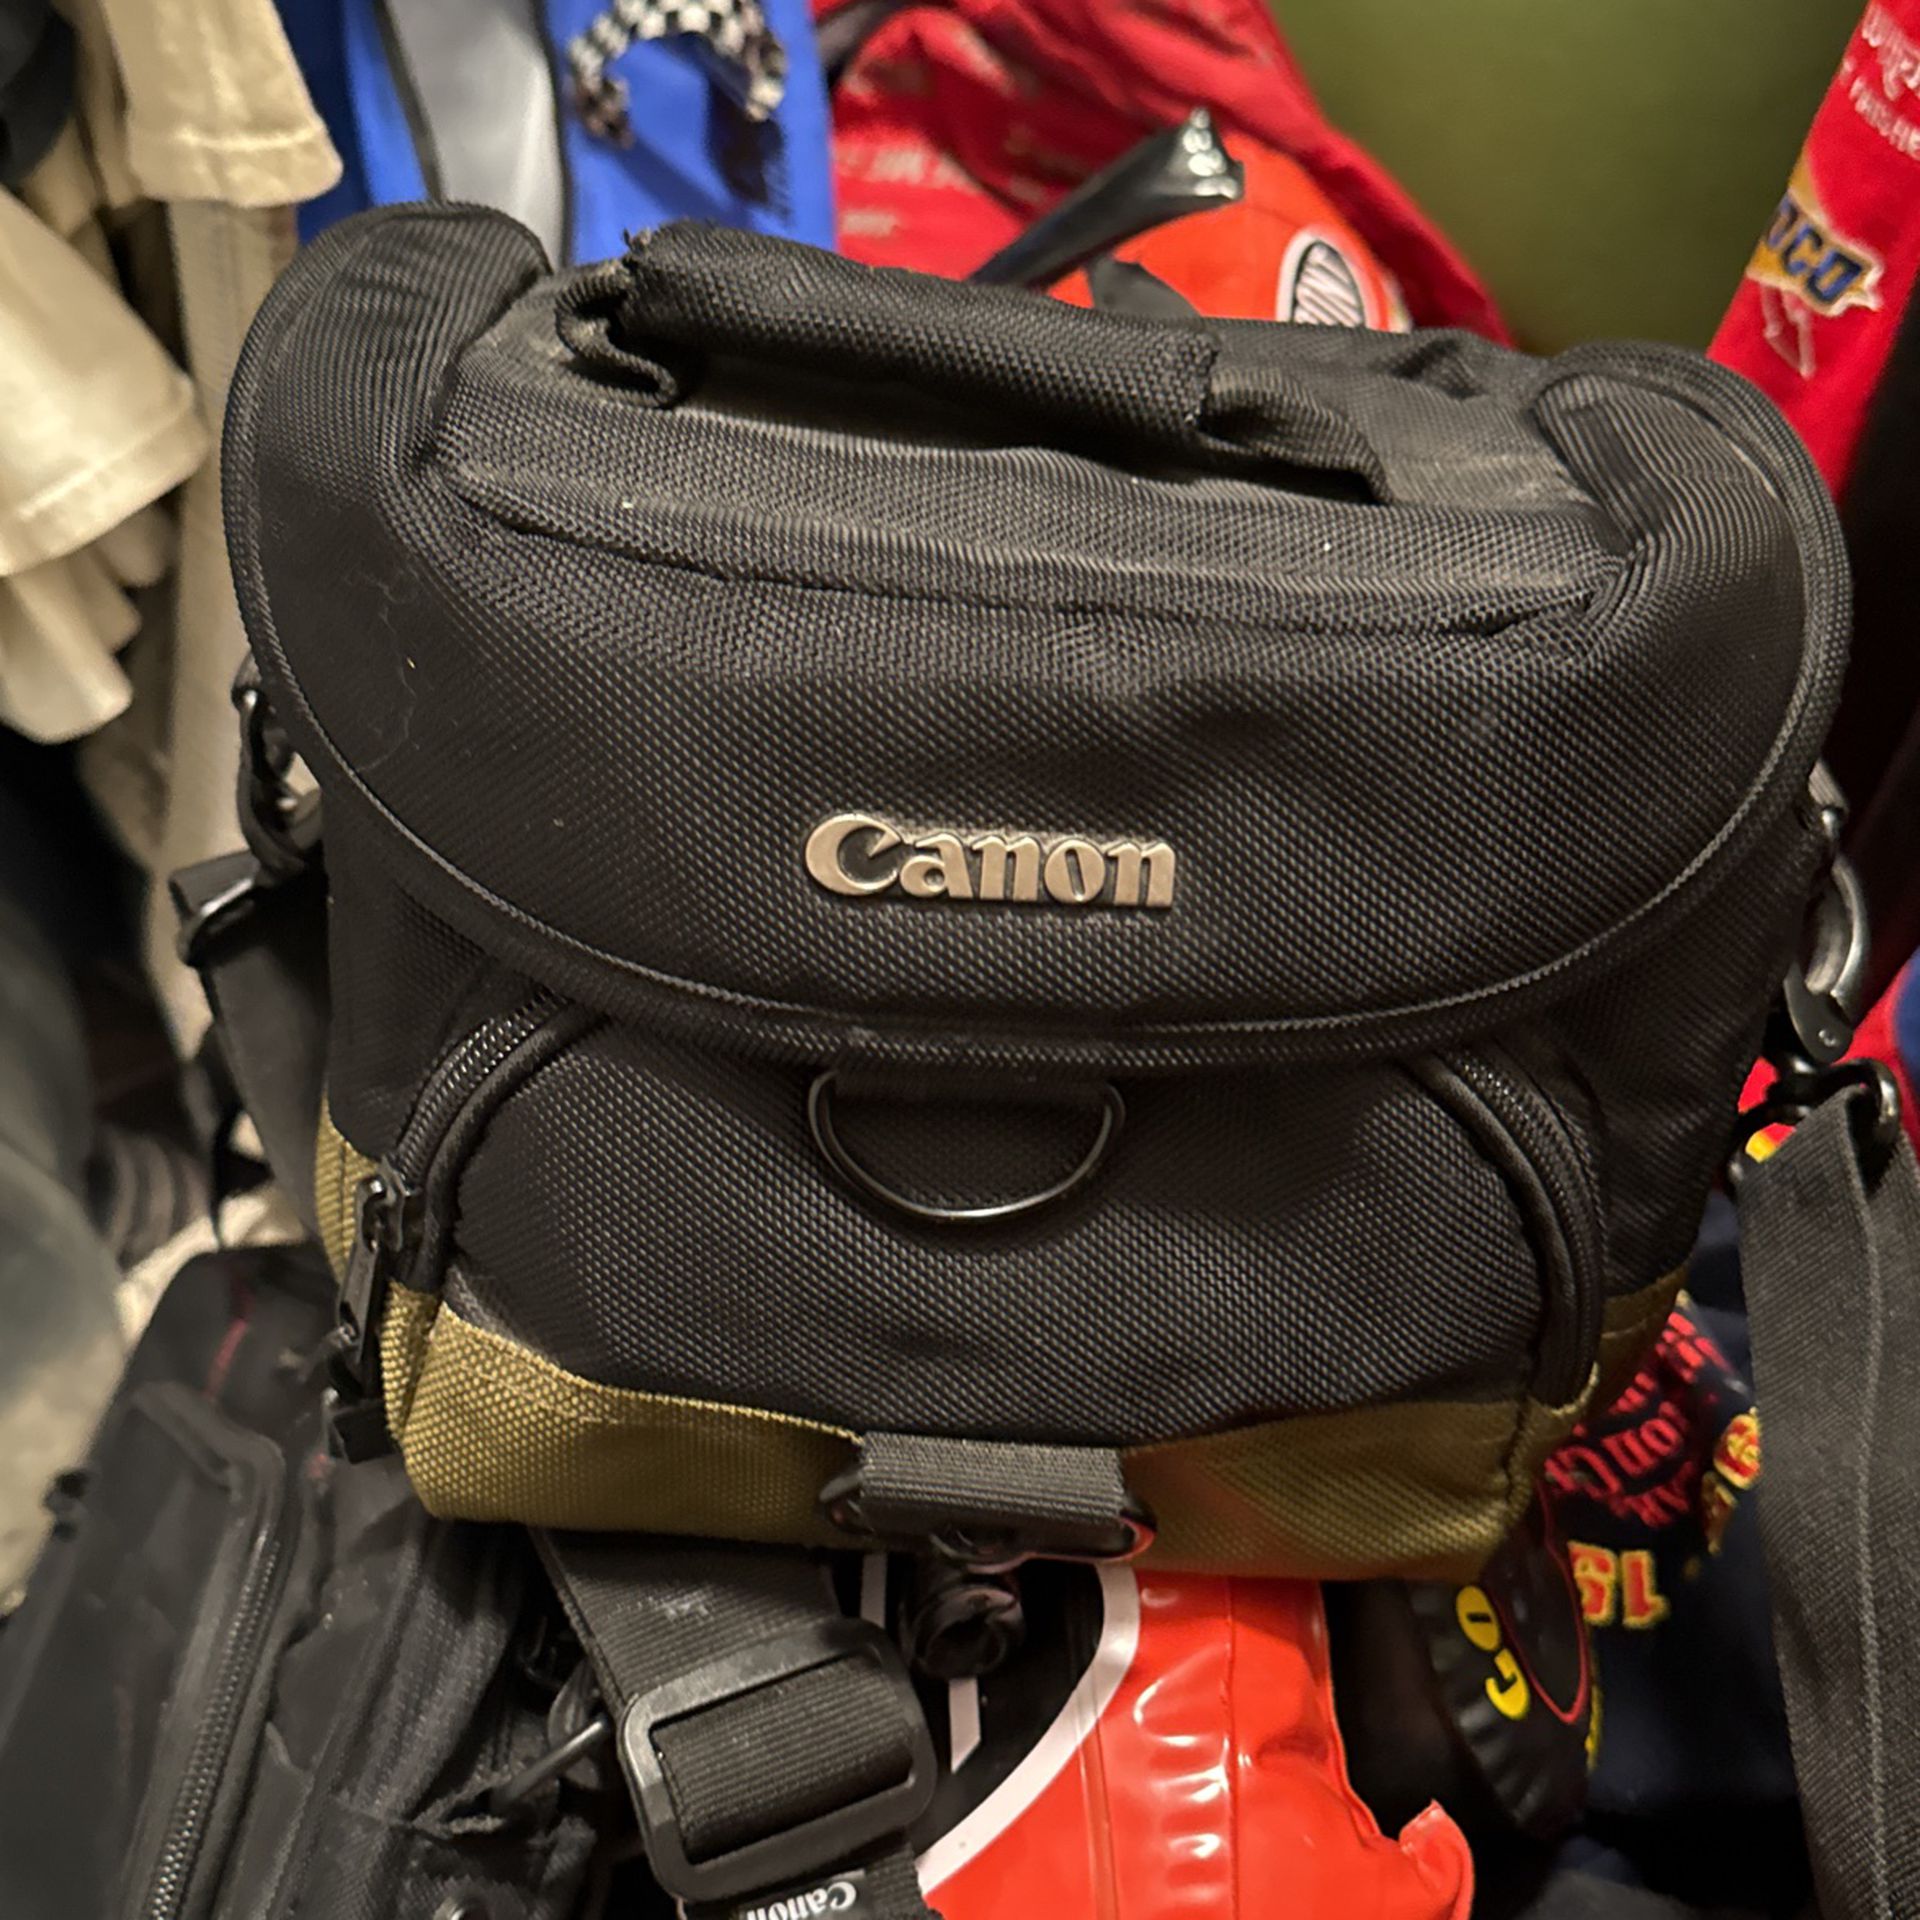 Cannon Camera Bag